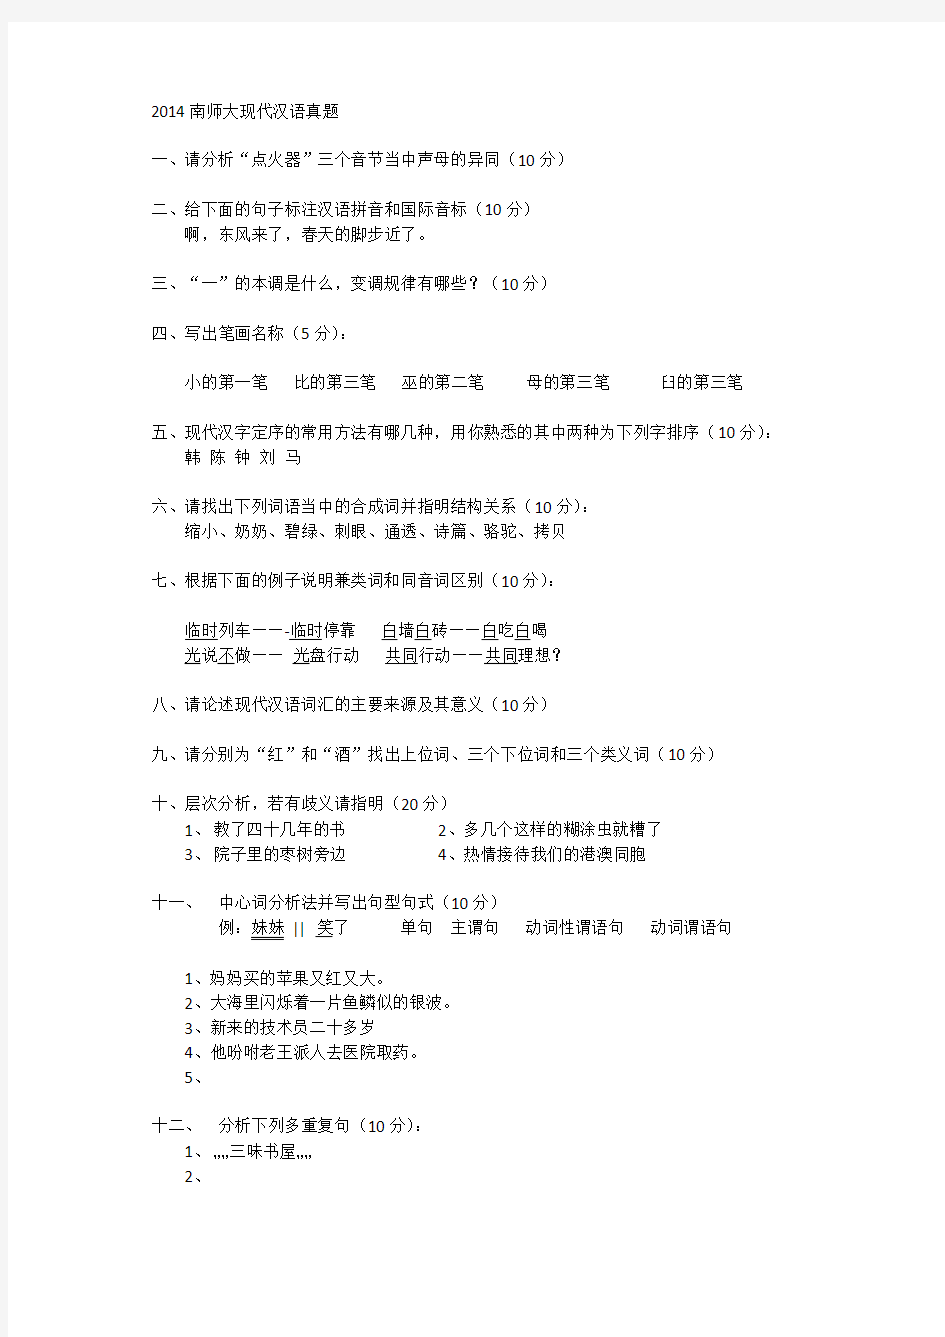 2014 南师大汉语言文字学 现代汉语真题(回忆版)